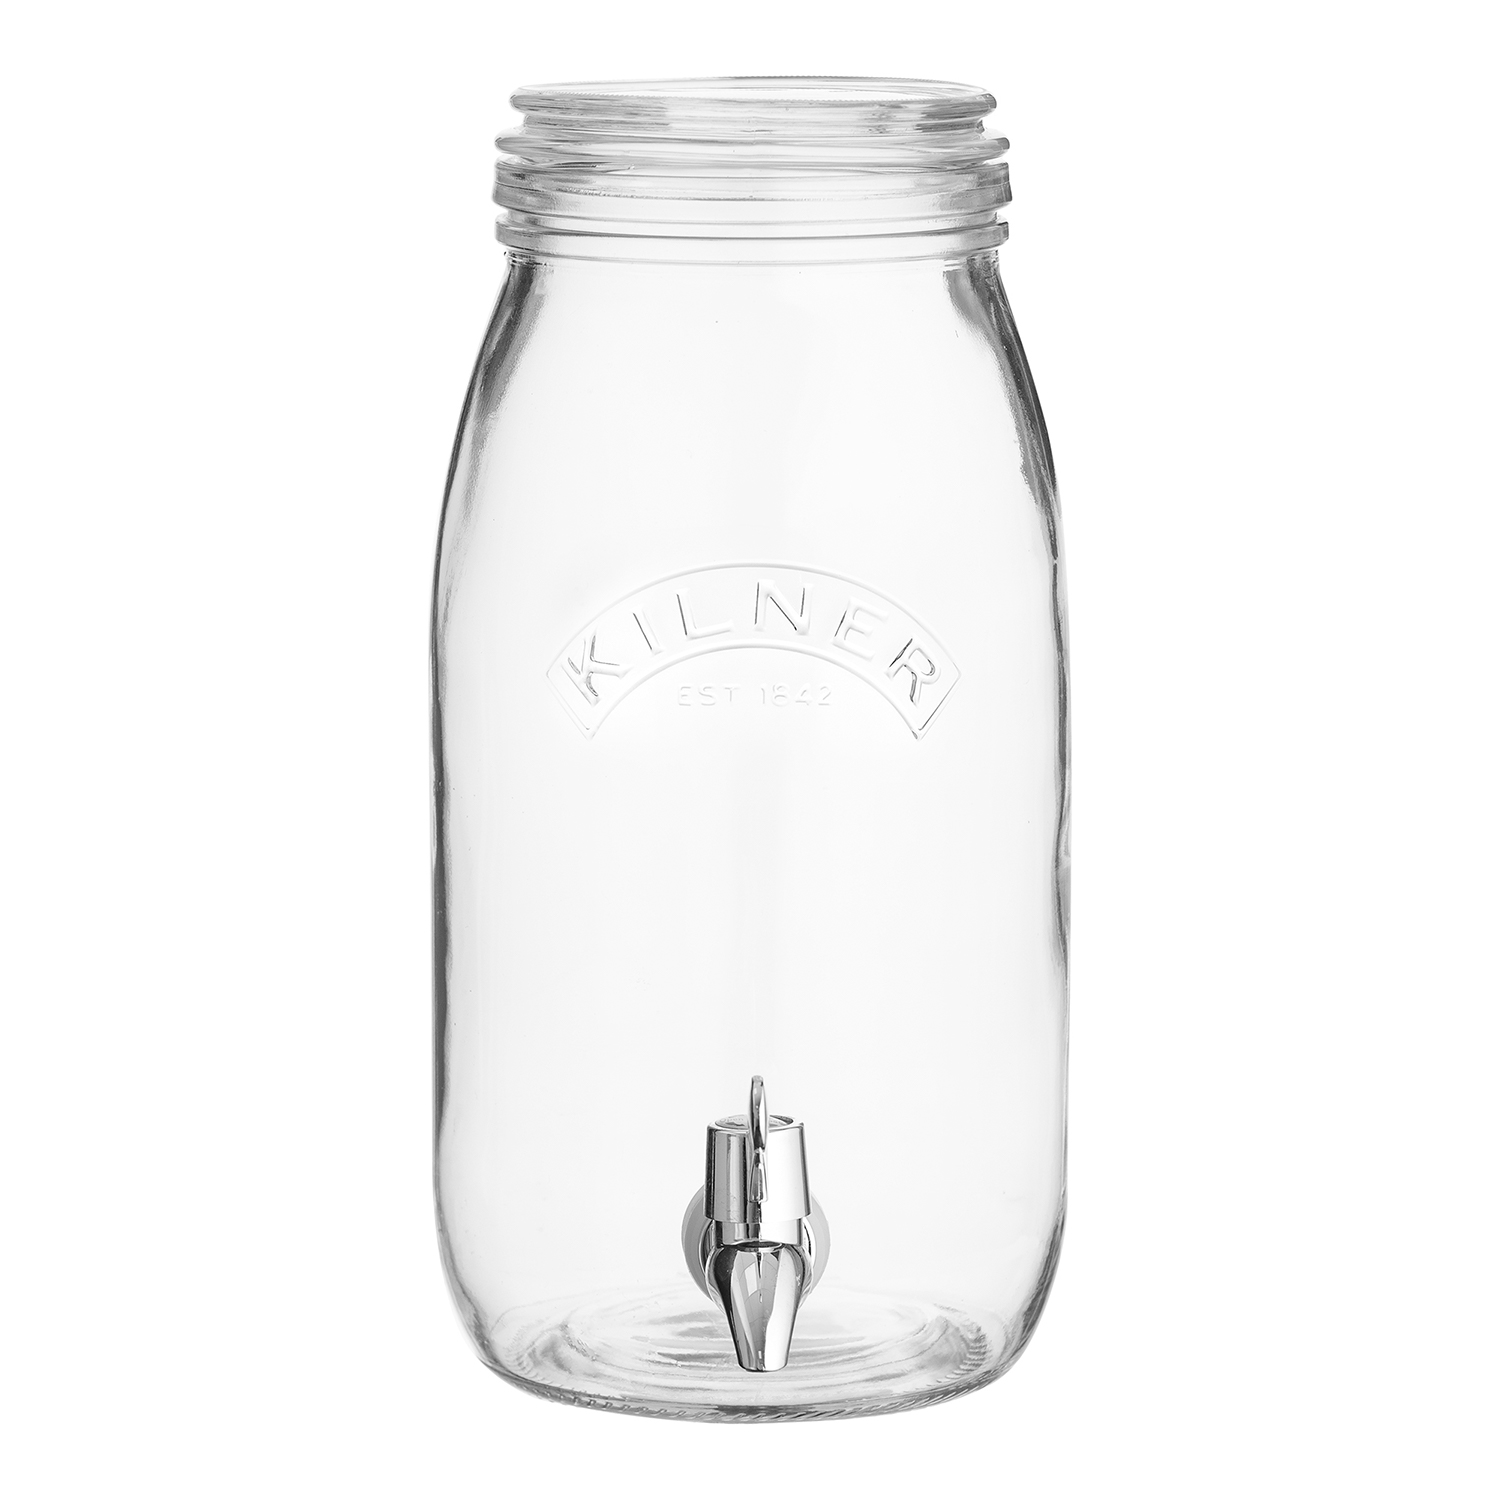 Kilner Vorratsglas mit Spenderhahn 3 Liter - Das Geschirrlädchen